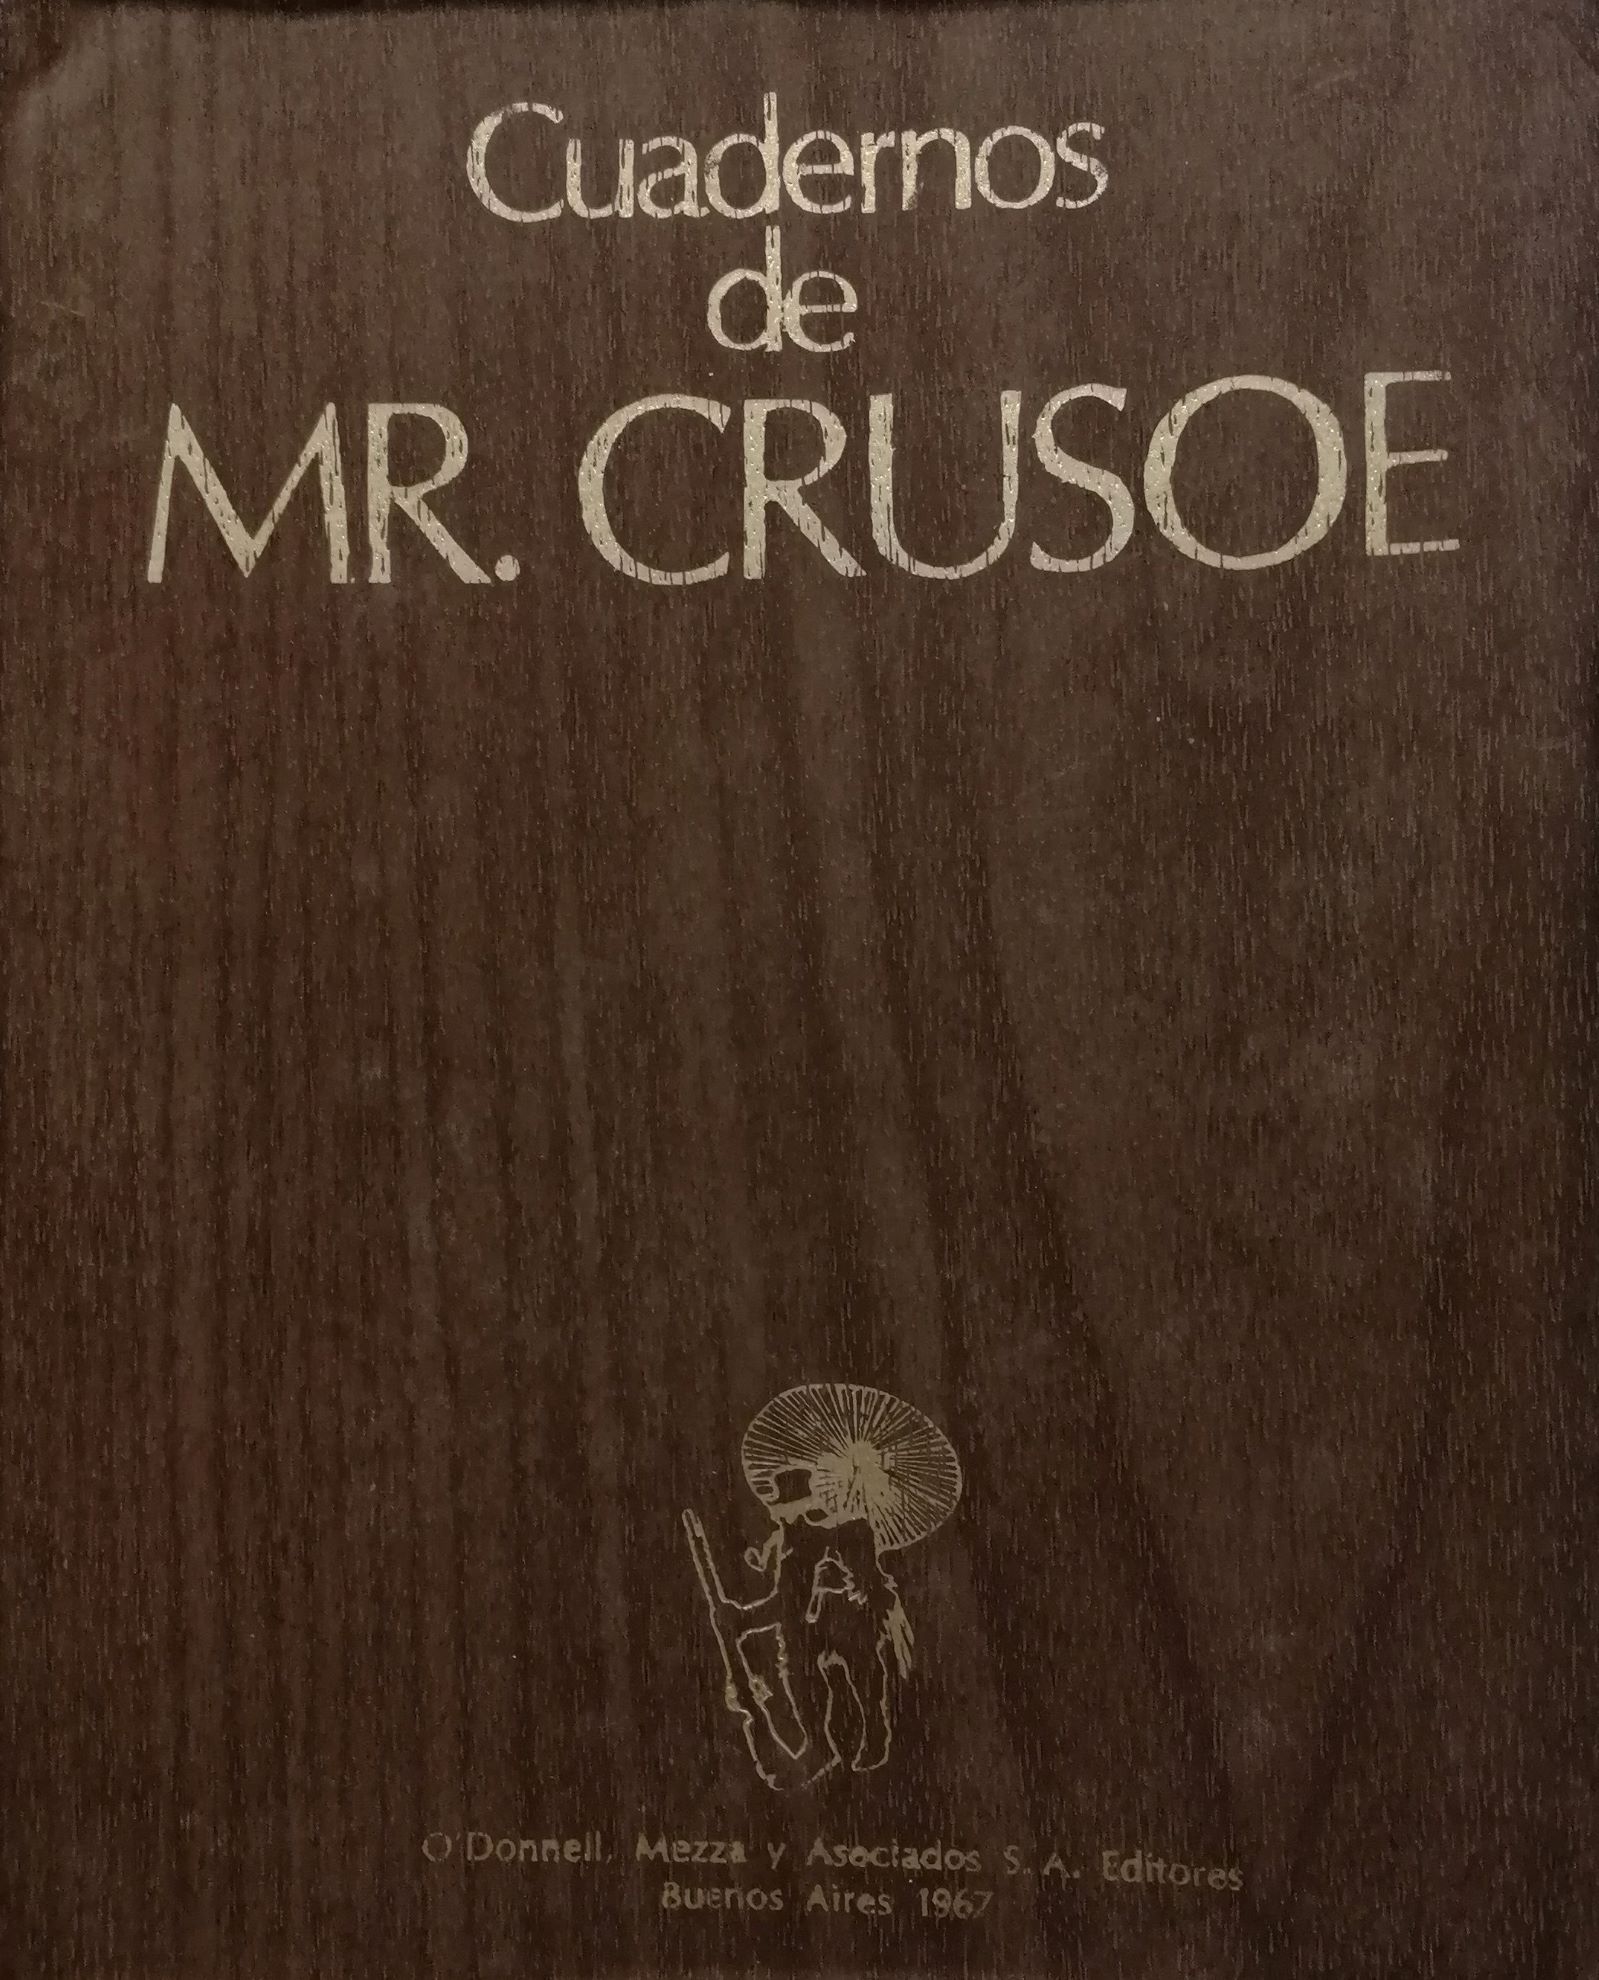 Cuadernos de Mr. Crusoe (1967)